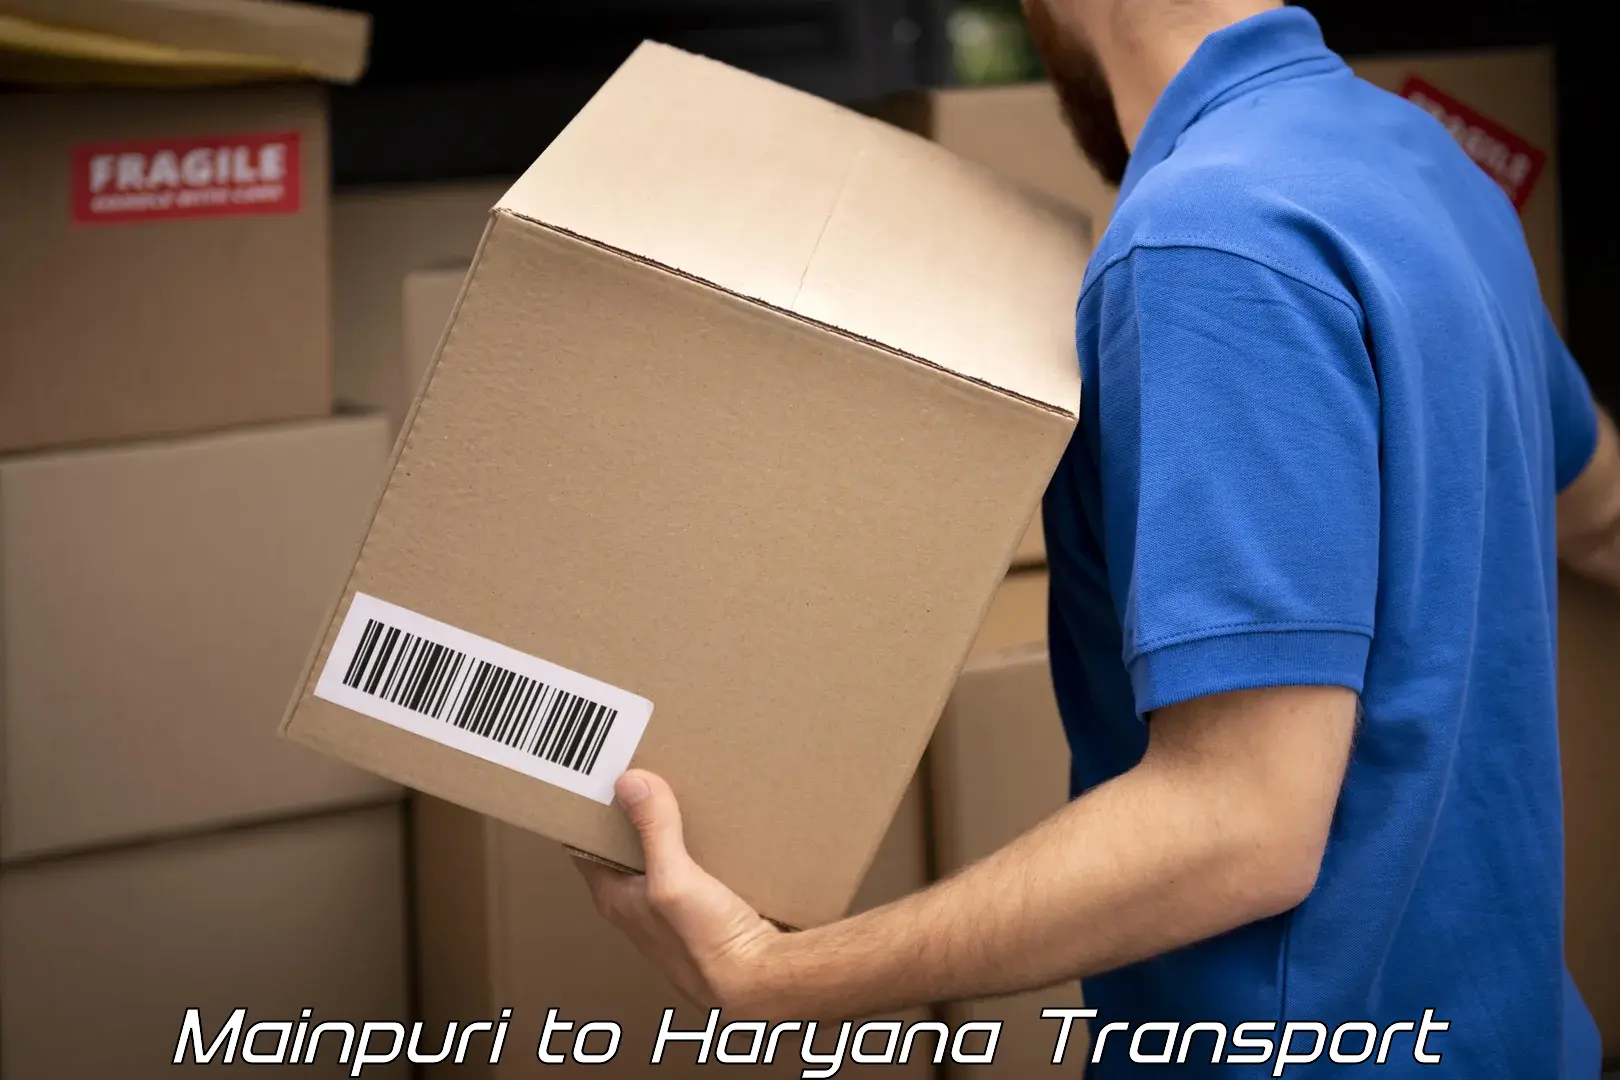 Container transport service Mainpuri to Narwana